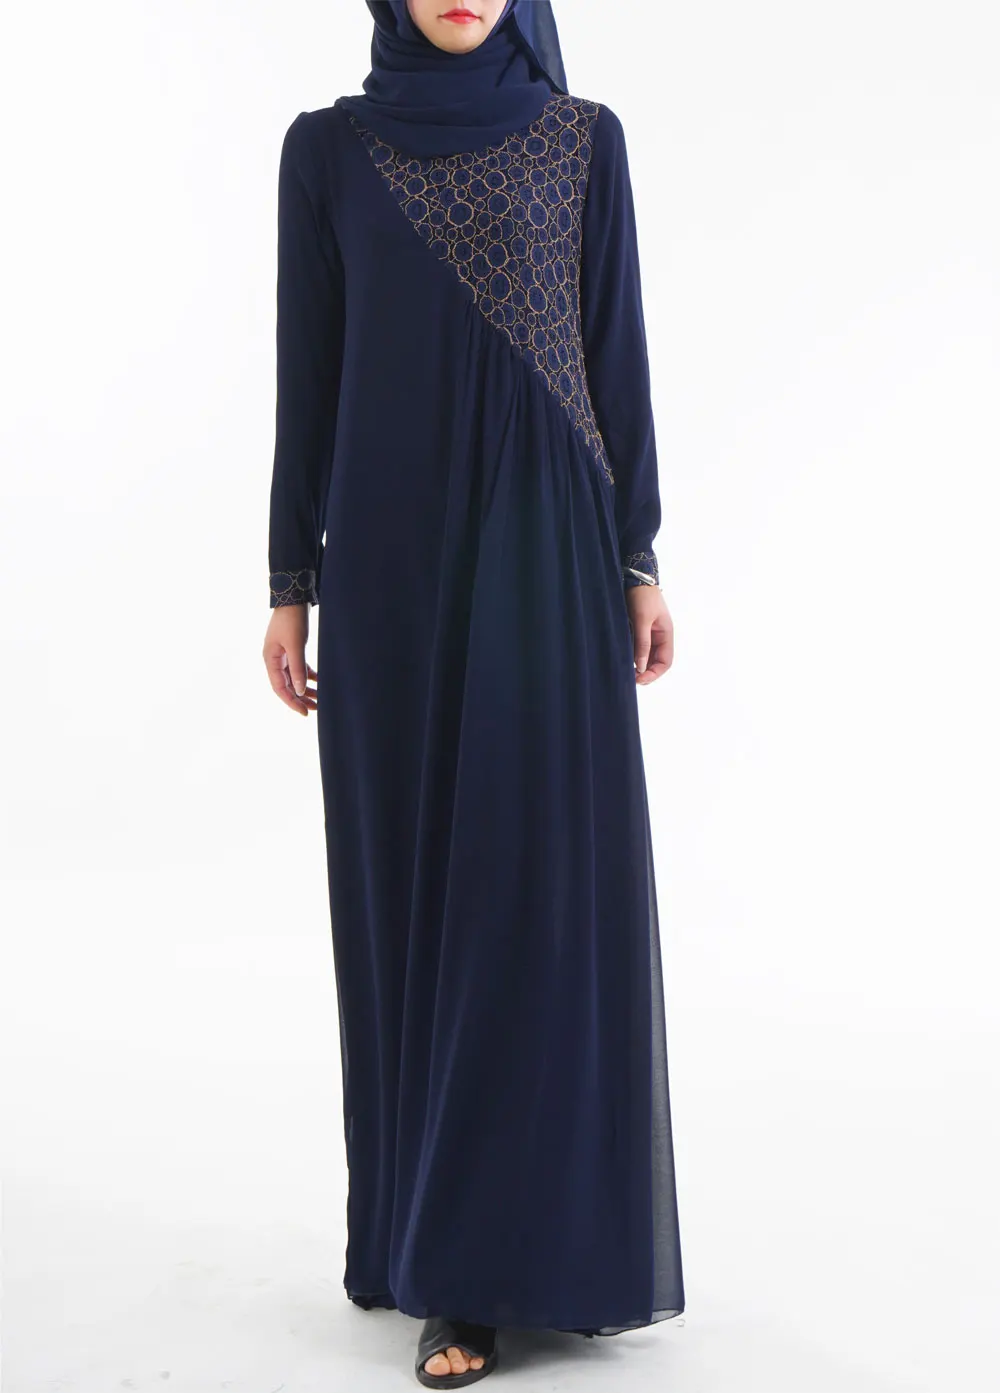 Мода мусульманский кружевное платье одежда женщин мусульманских стран для Для женщин джилбаба Djellaba халат мусульманин турецкий Baju халат кимоно кафтан 06